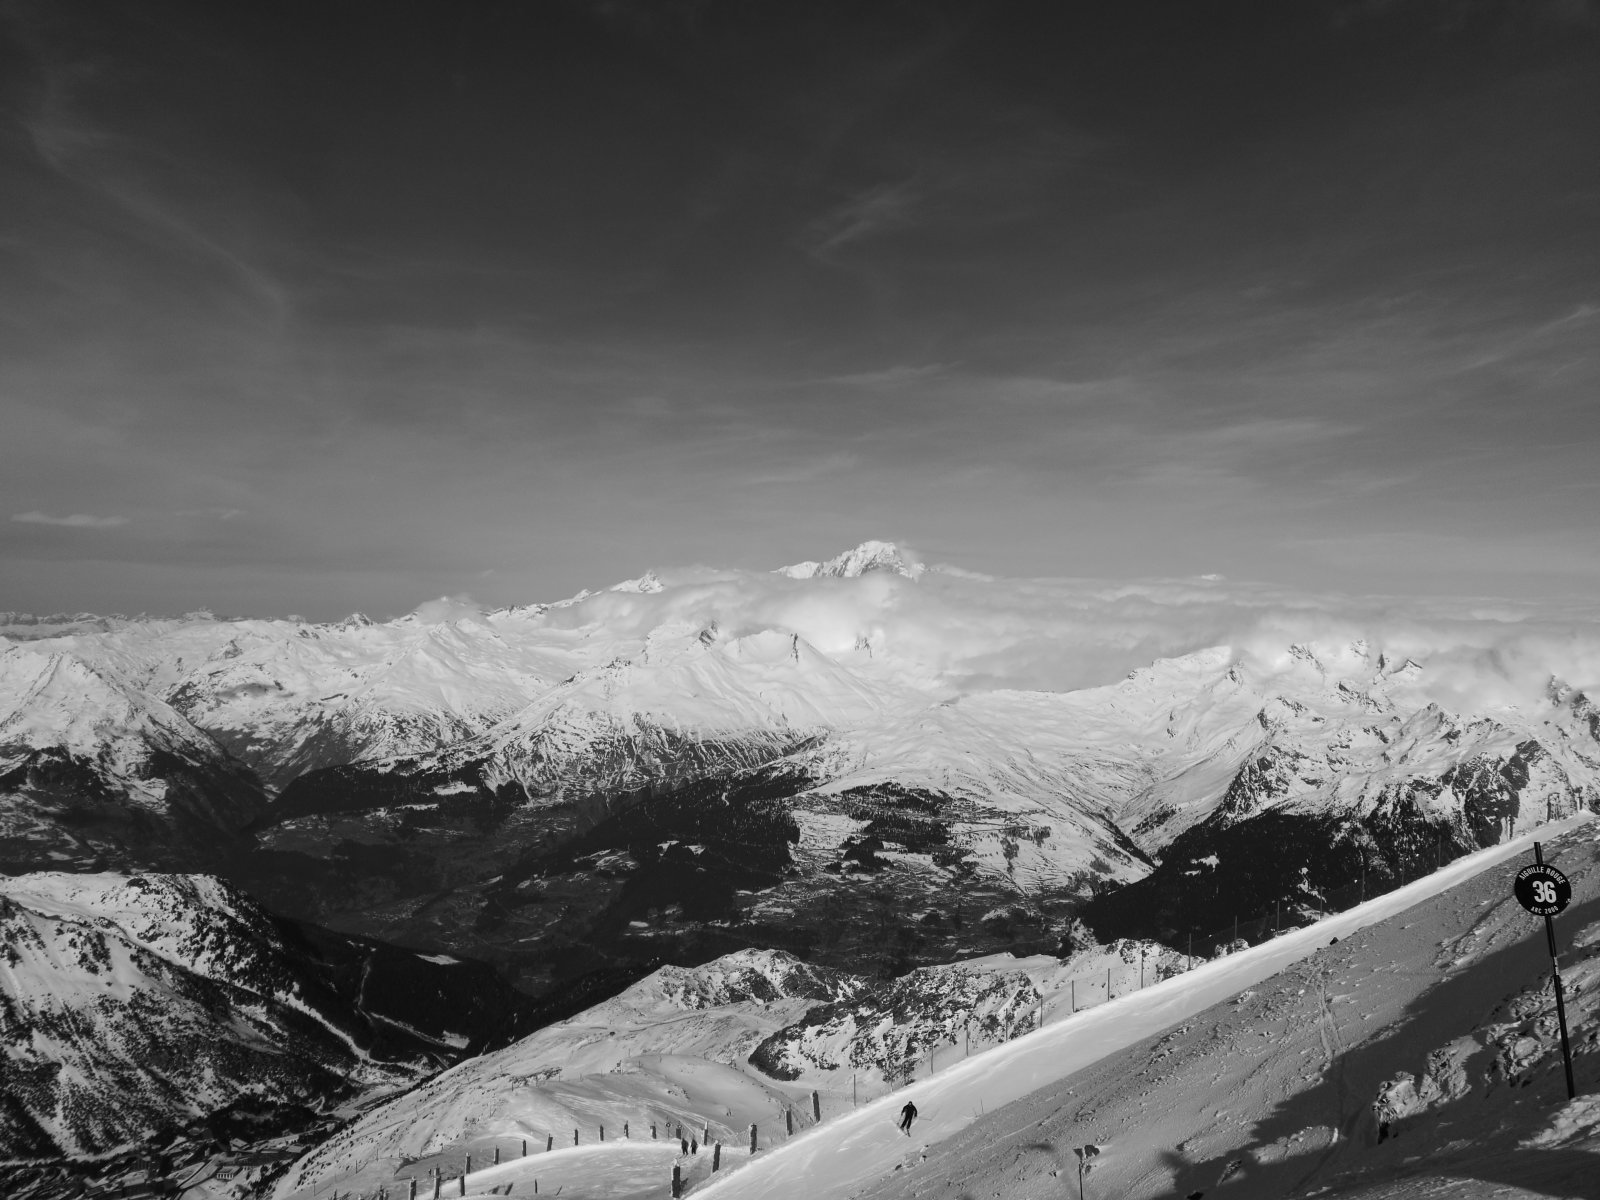 Háttérben a csodálatos Mount Blanc